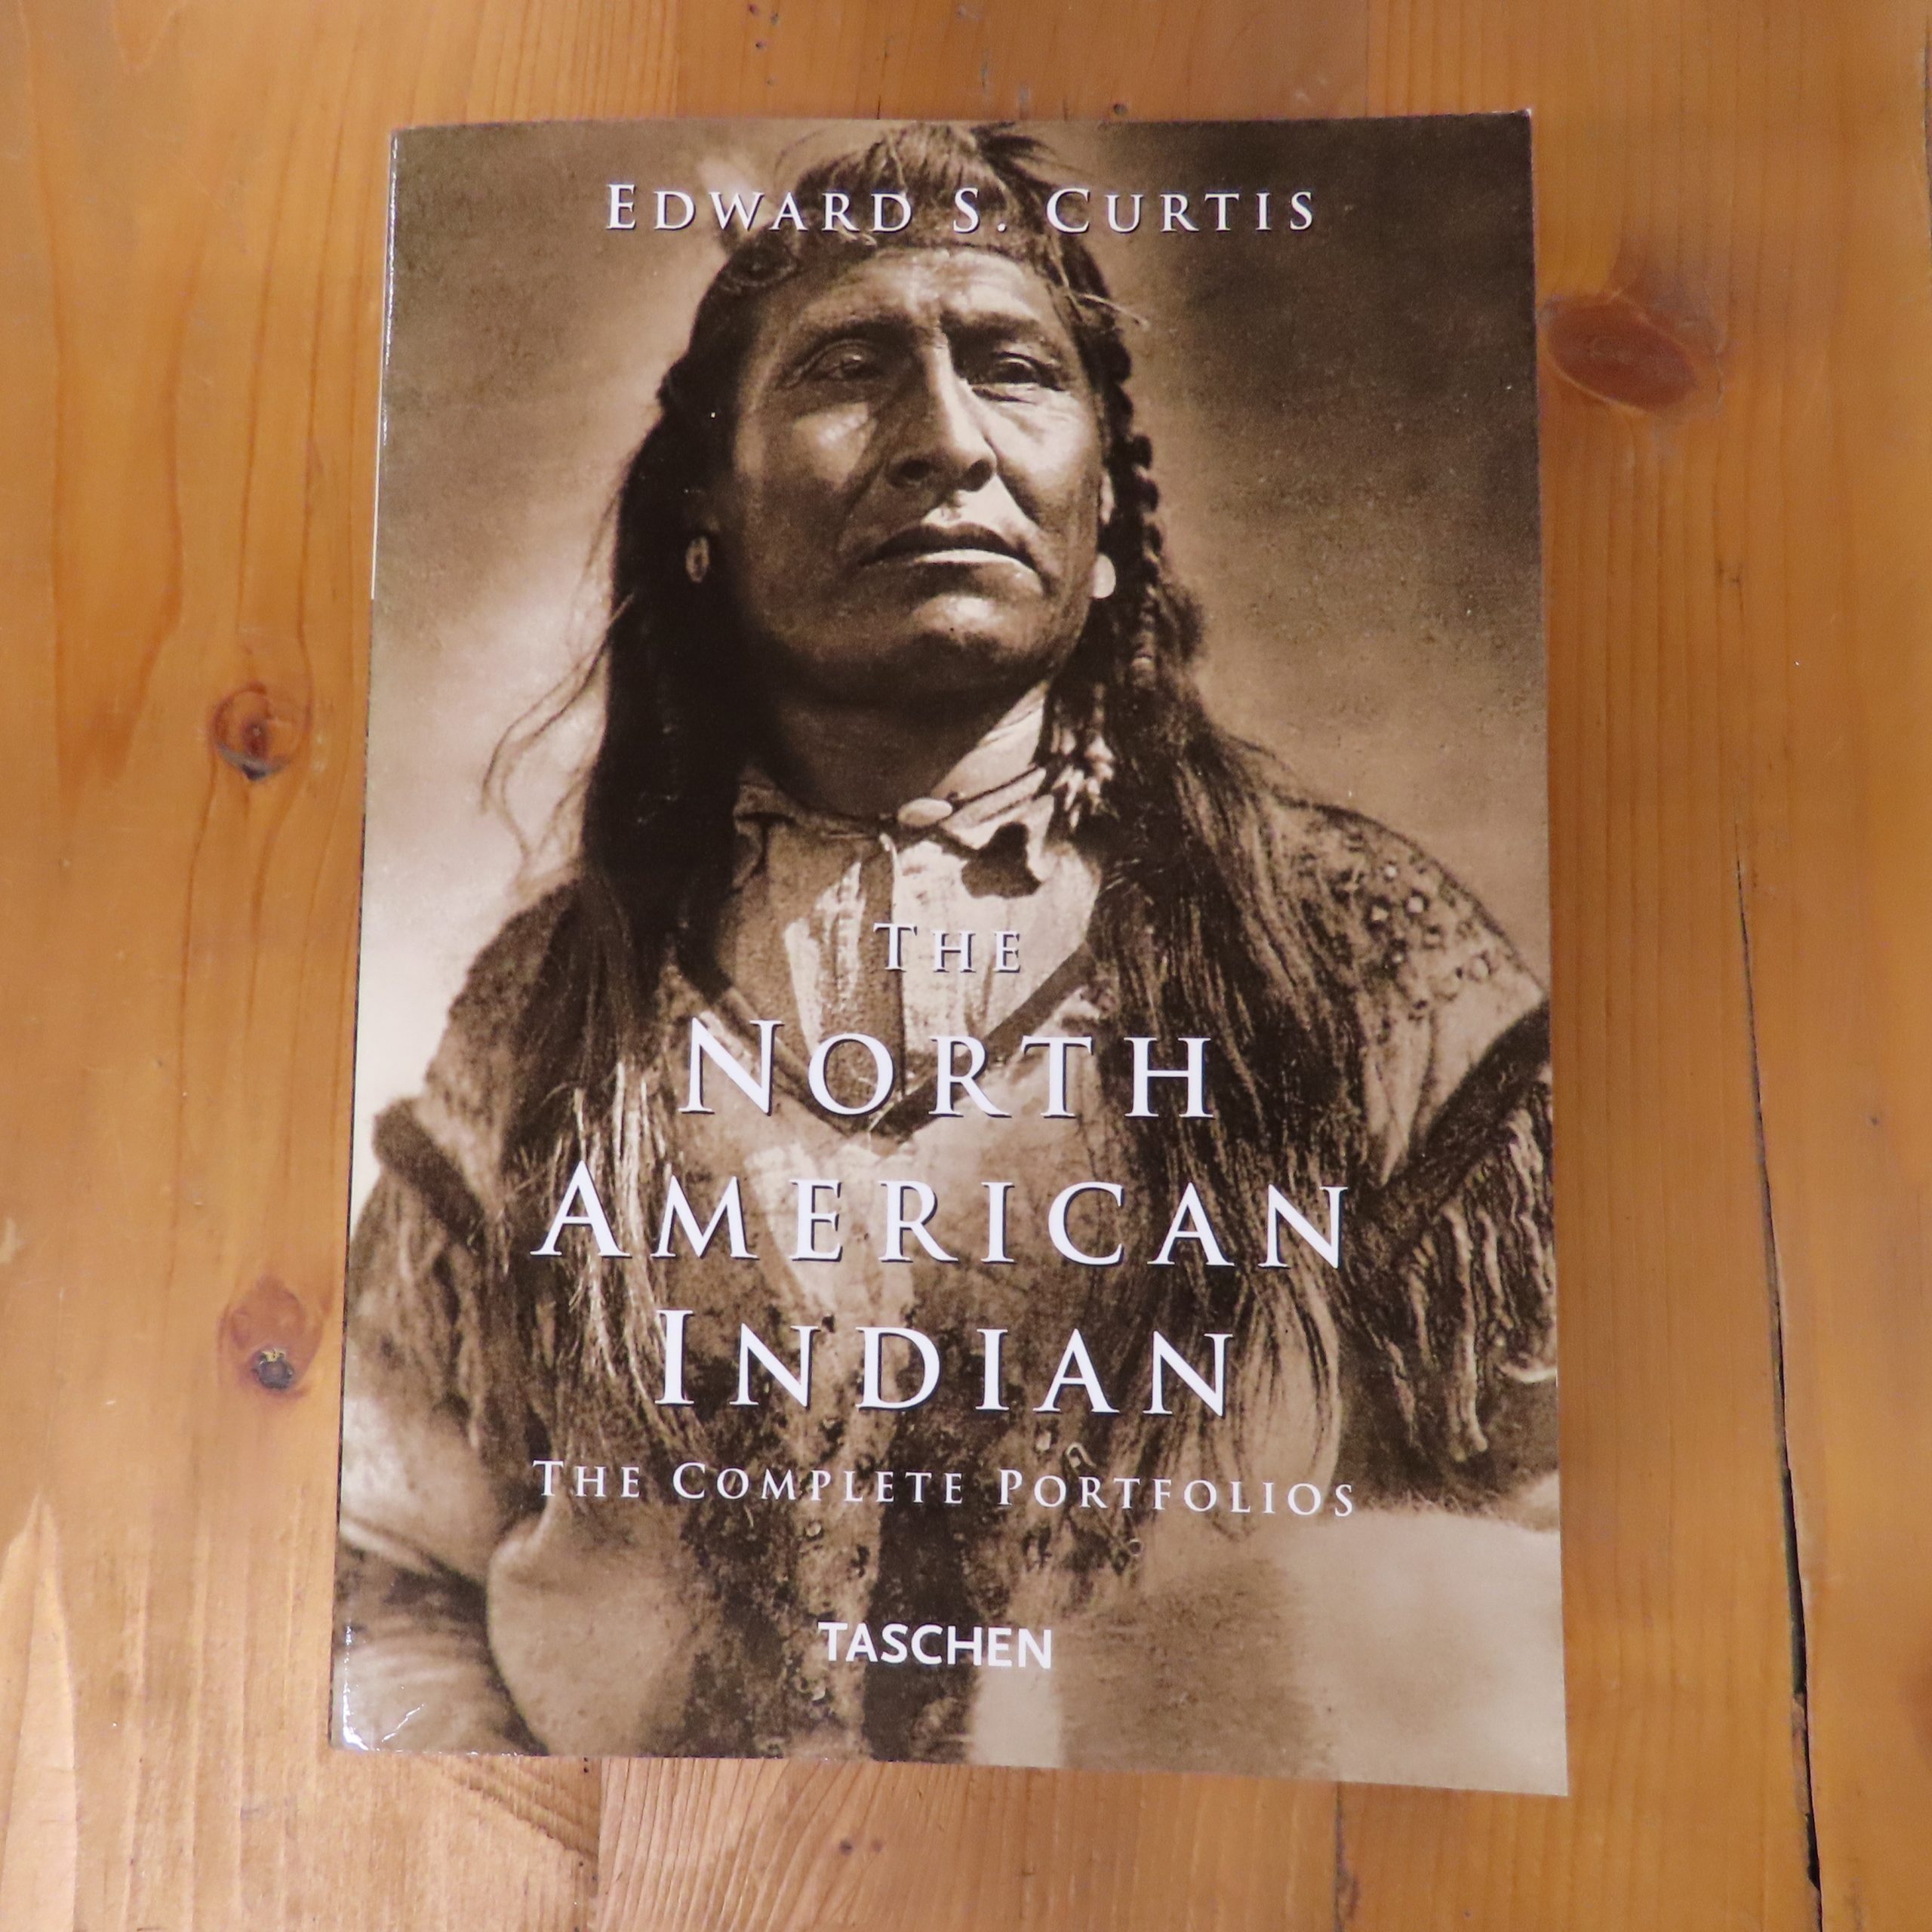 Boek “The North American Indian” van Edward S. Curtis